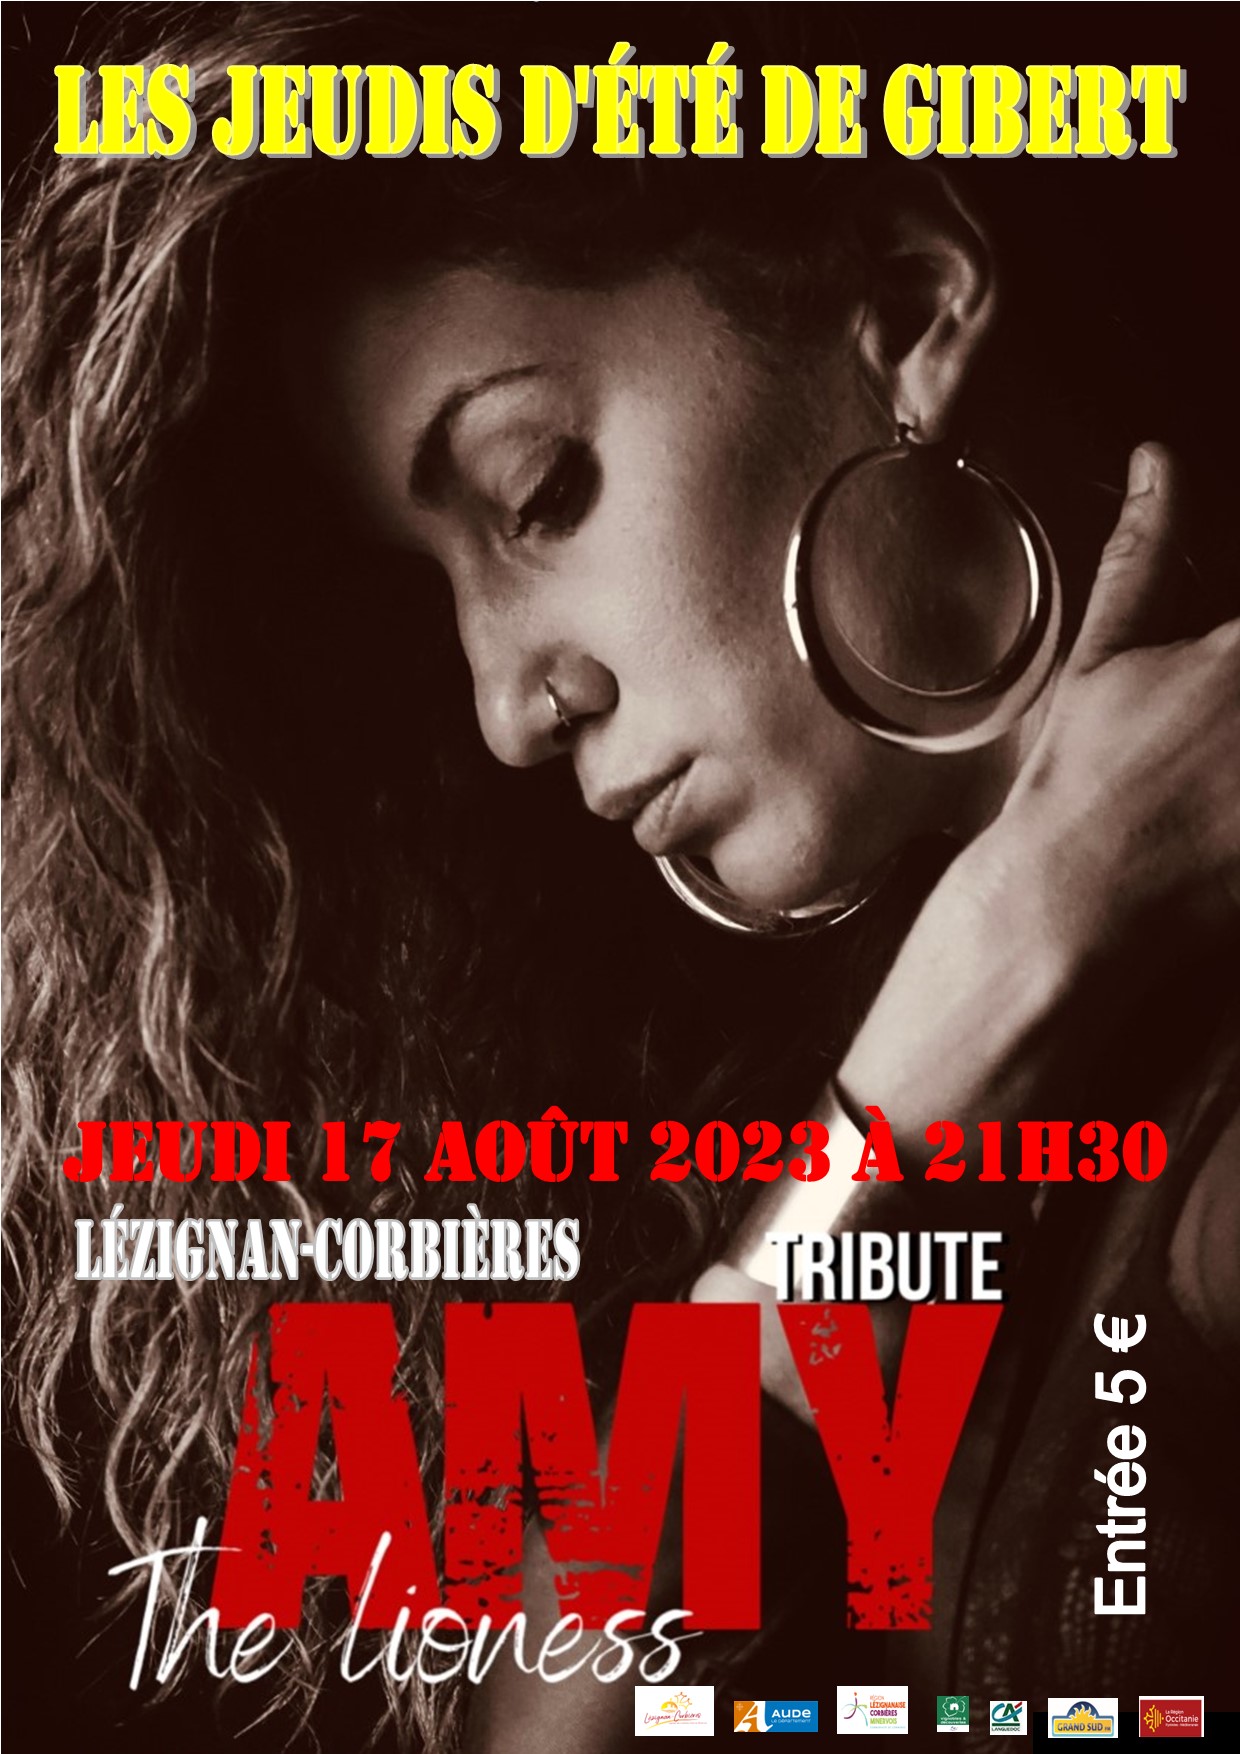 "Amy the LIONESS" jeudi 17 août 2023 21h30